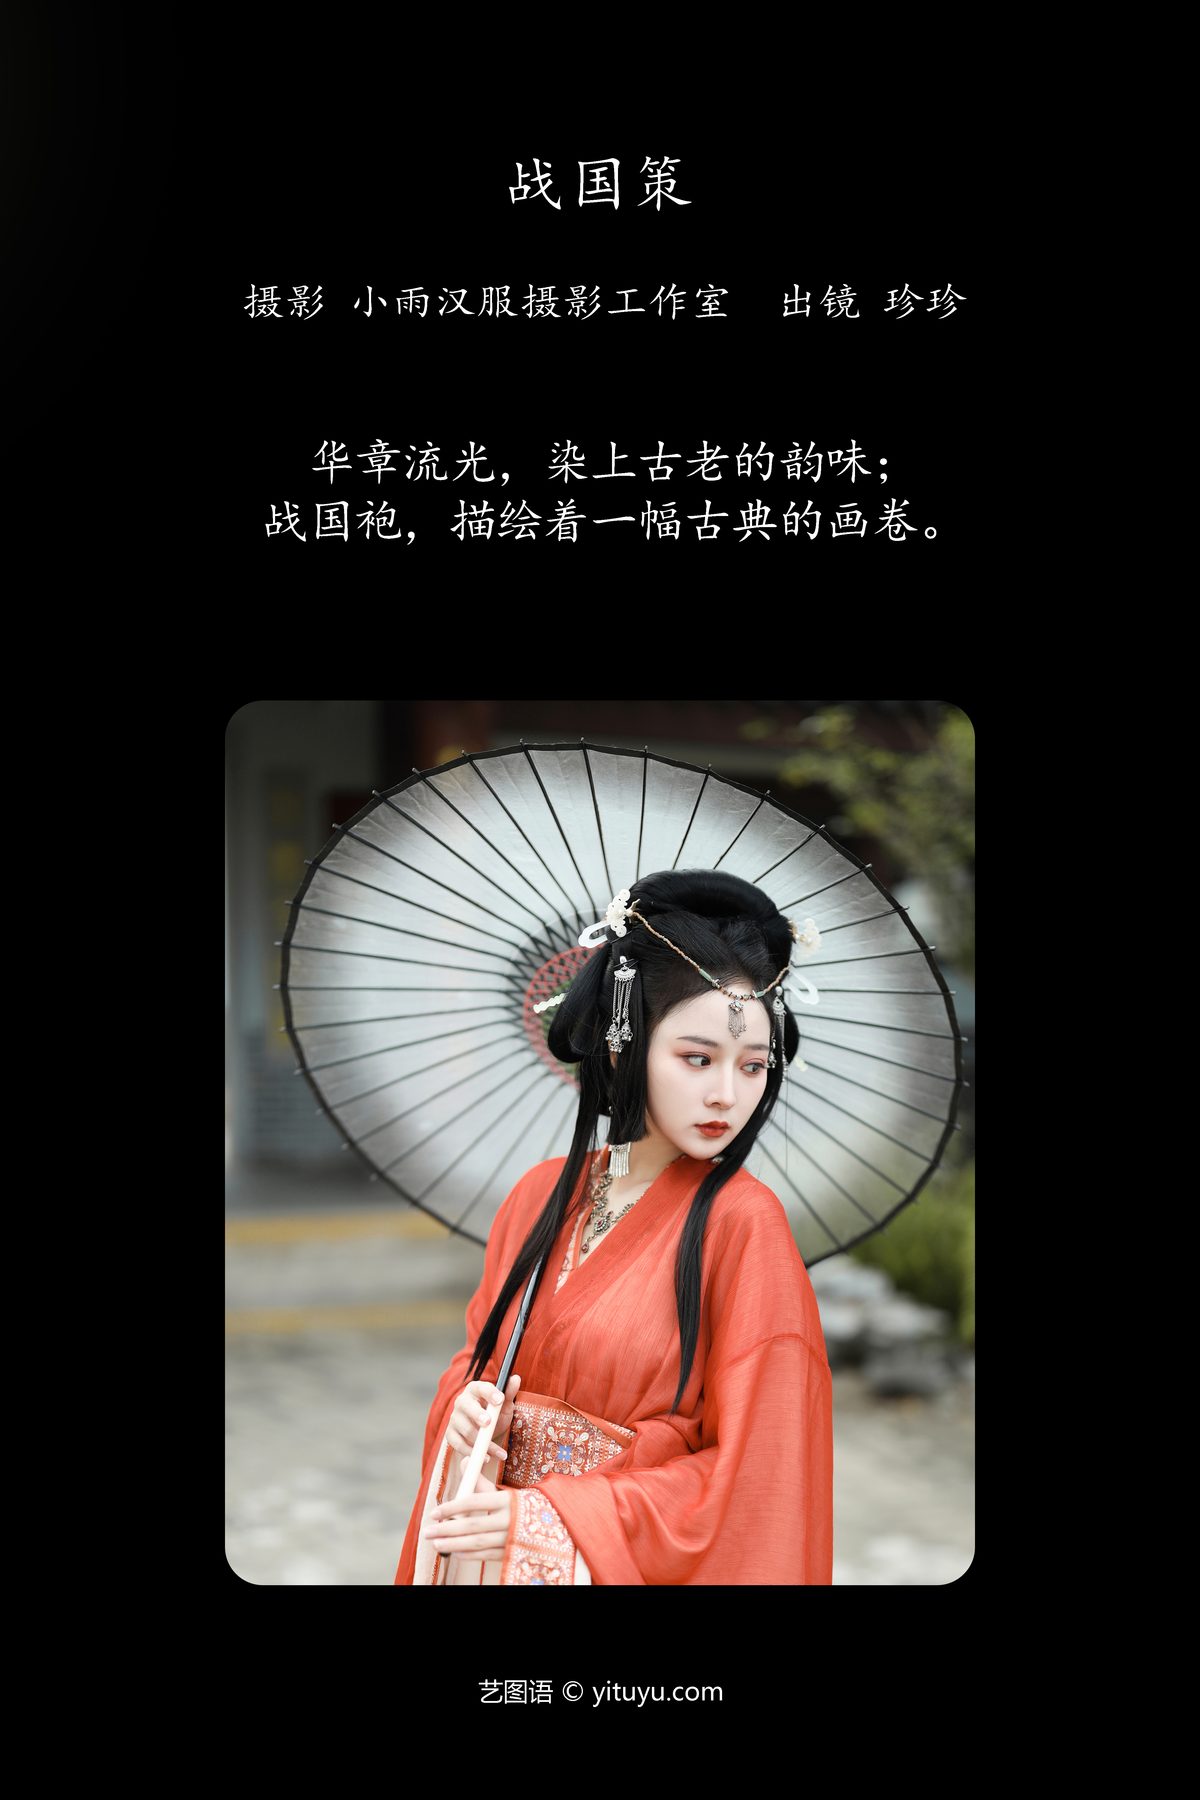 YiTuYu艺图语 Vol 6227 Wo Shi Xiao Sui Sui 0002 3977528476.jpg